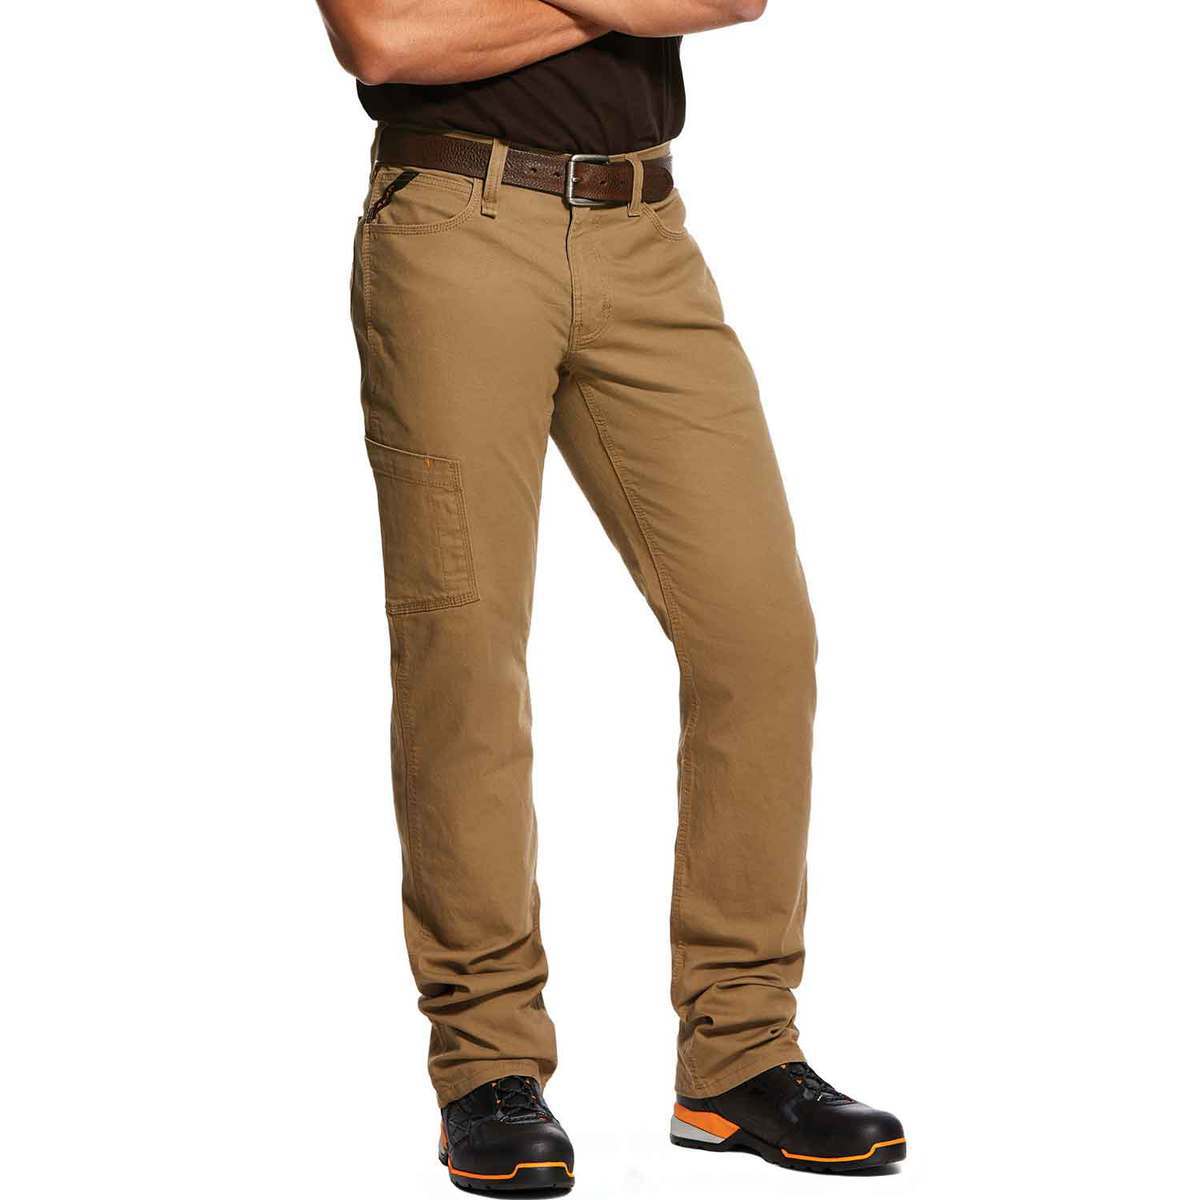 Ariat Men's Rebar M4 Khaki Made Tough DuraStretch Work Pants